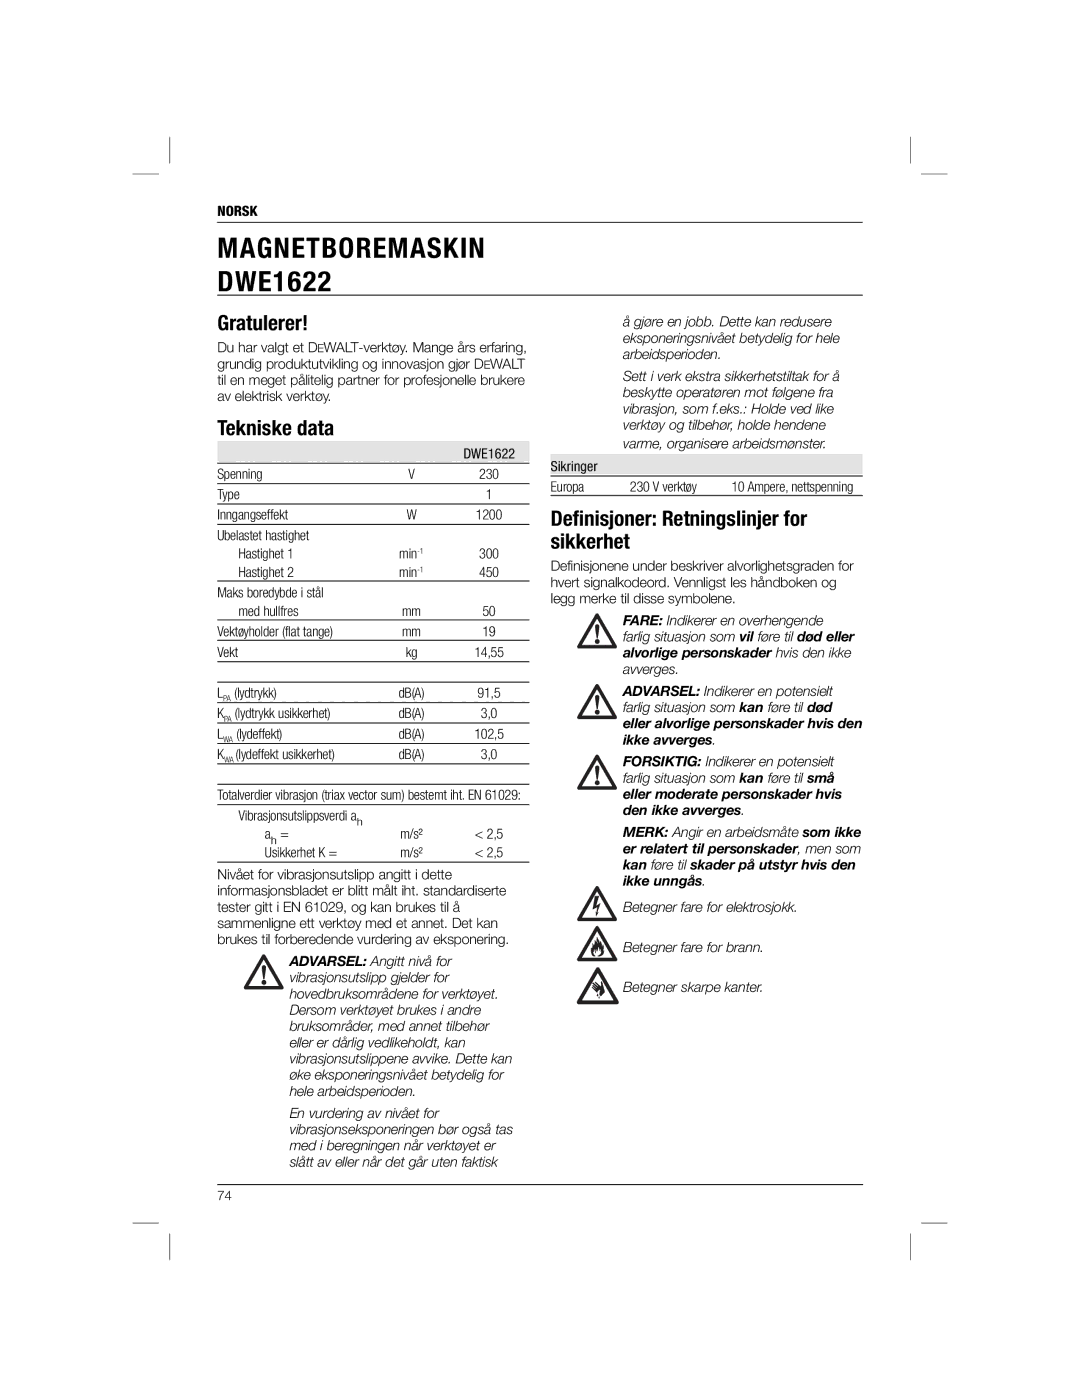 DeWalt DWE1622K manual Gratulerer, Deﬁnisjoner Retningslinjer for sikkerhet, Norsk 